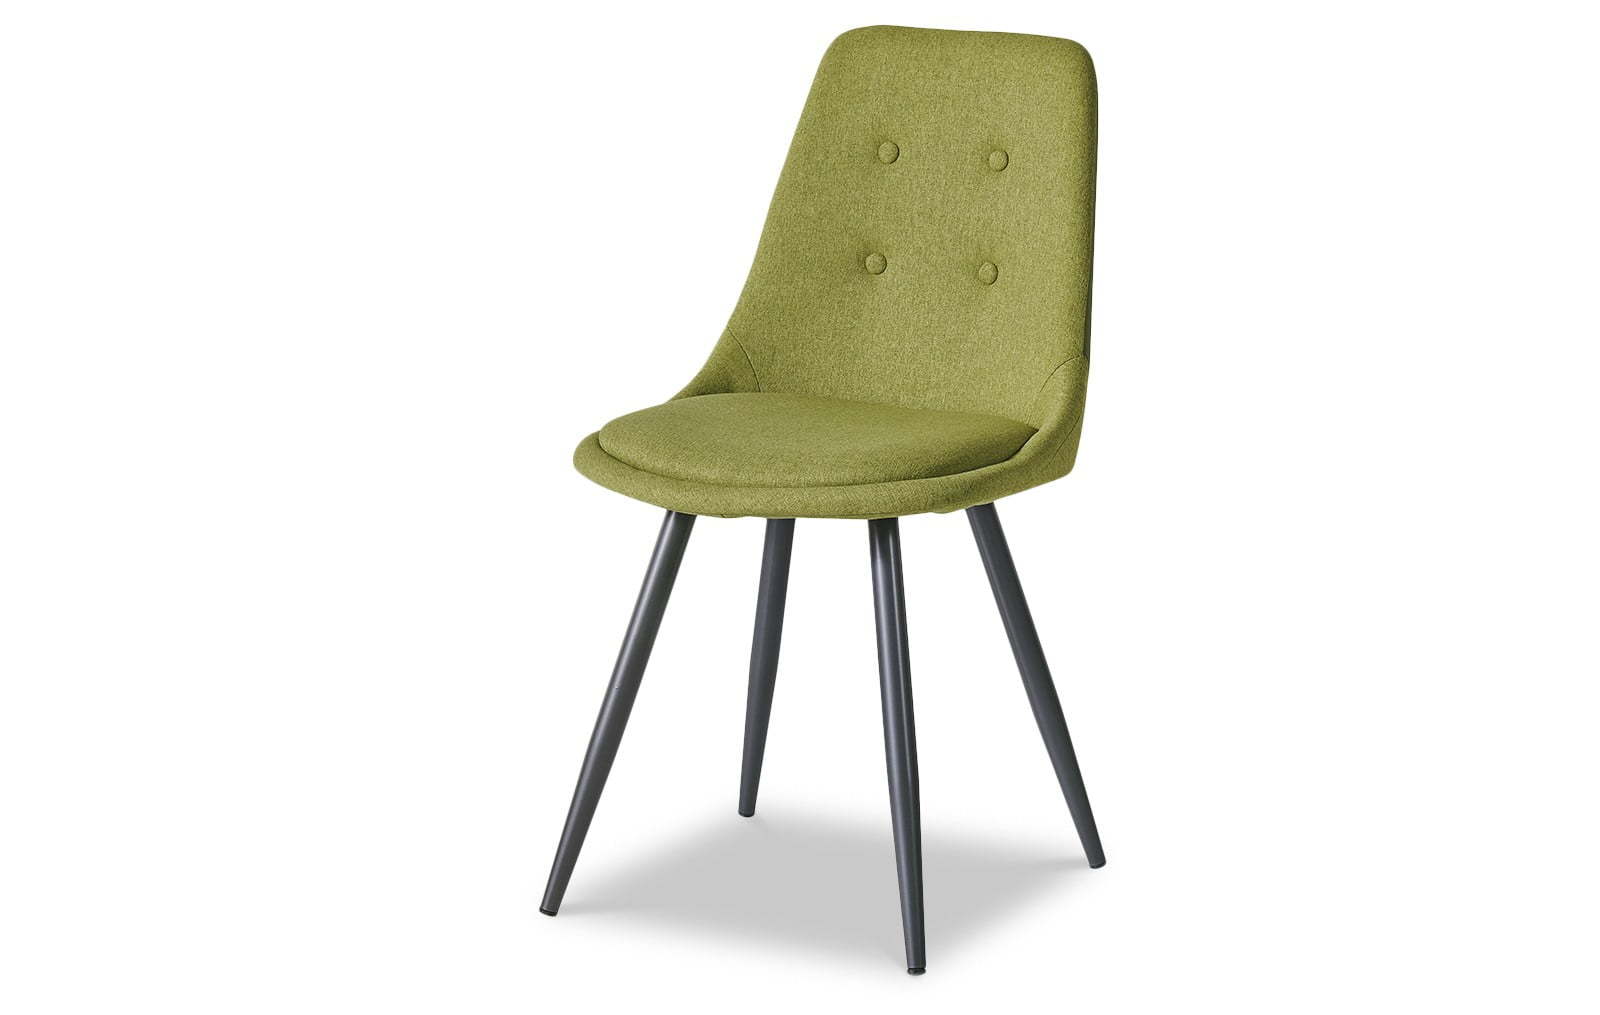 стул обеденный мягкий зеленый